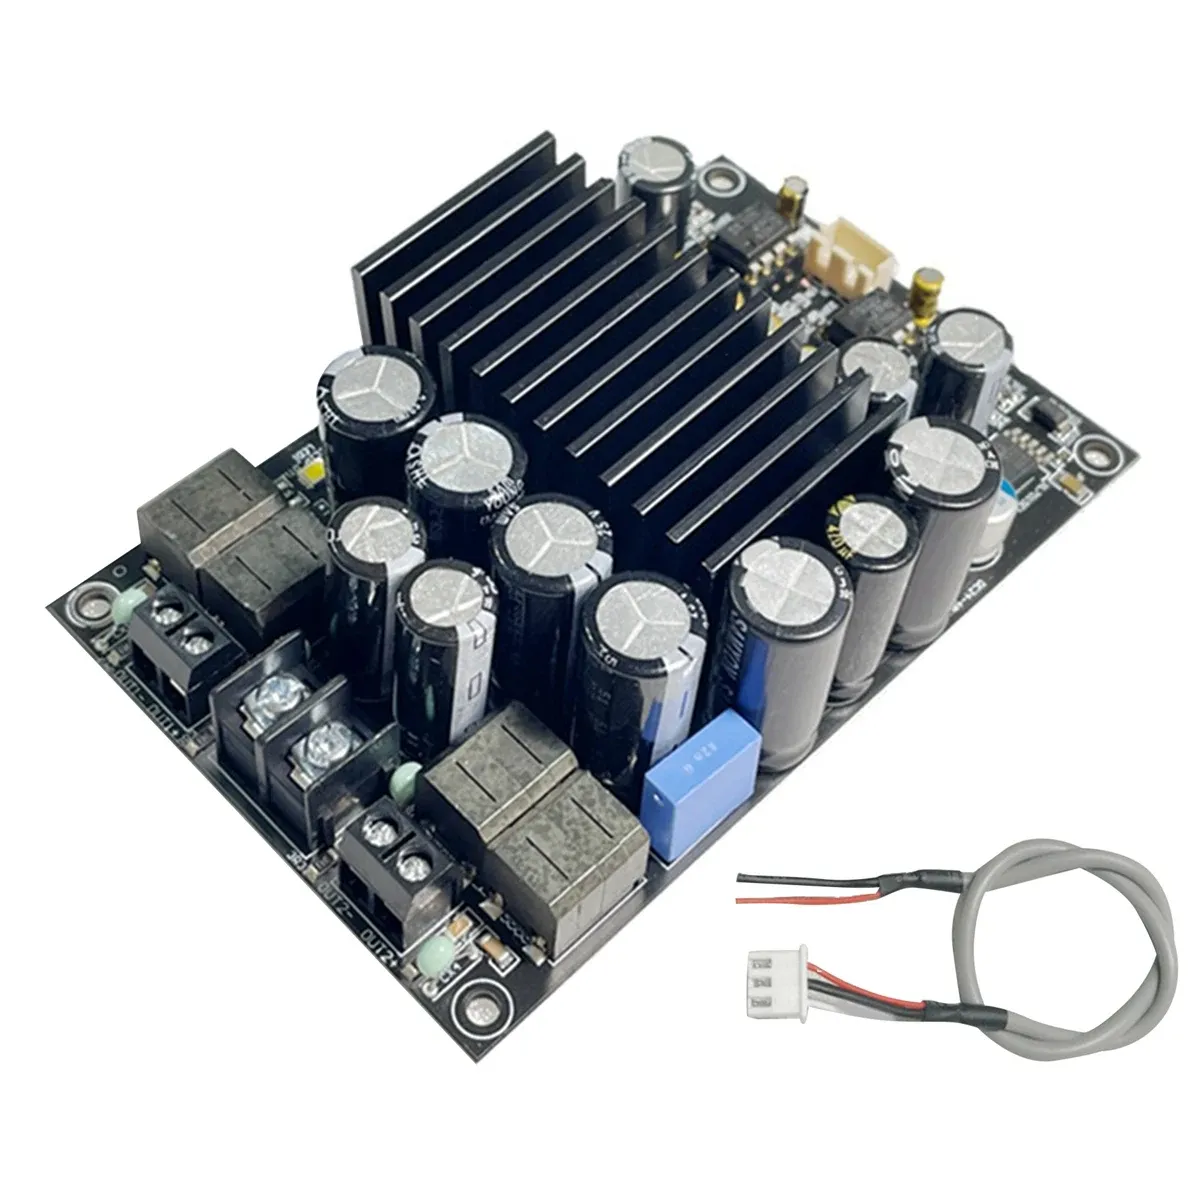 Amplifiers TPA3255 Fever Level HIFI Digital Amplifier Board 300W+300W HighPower 2.0 Channel Stereo Class D Audio Amplifier Board